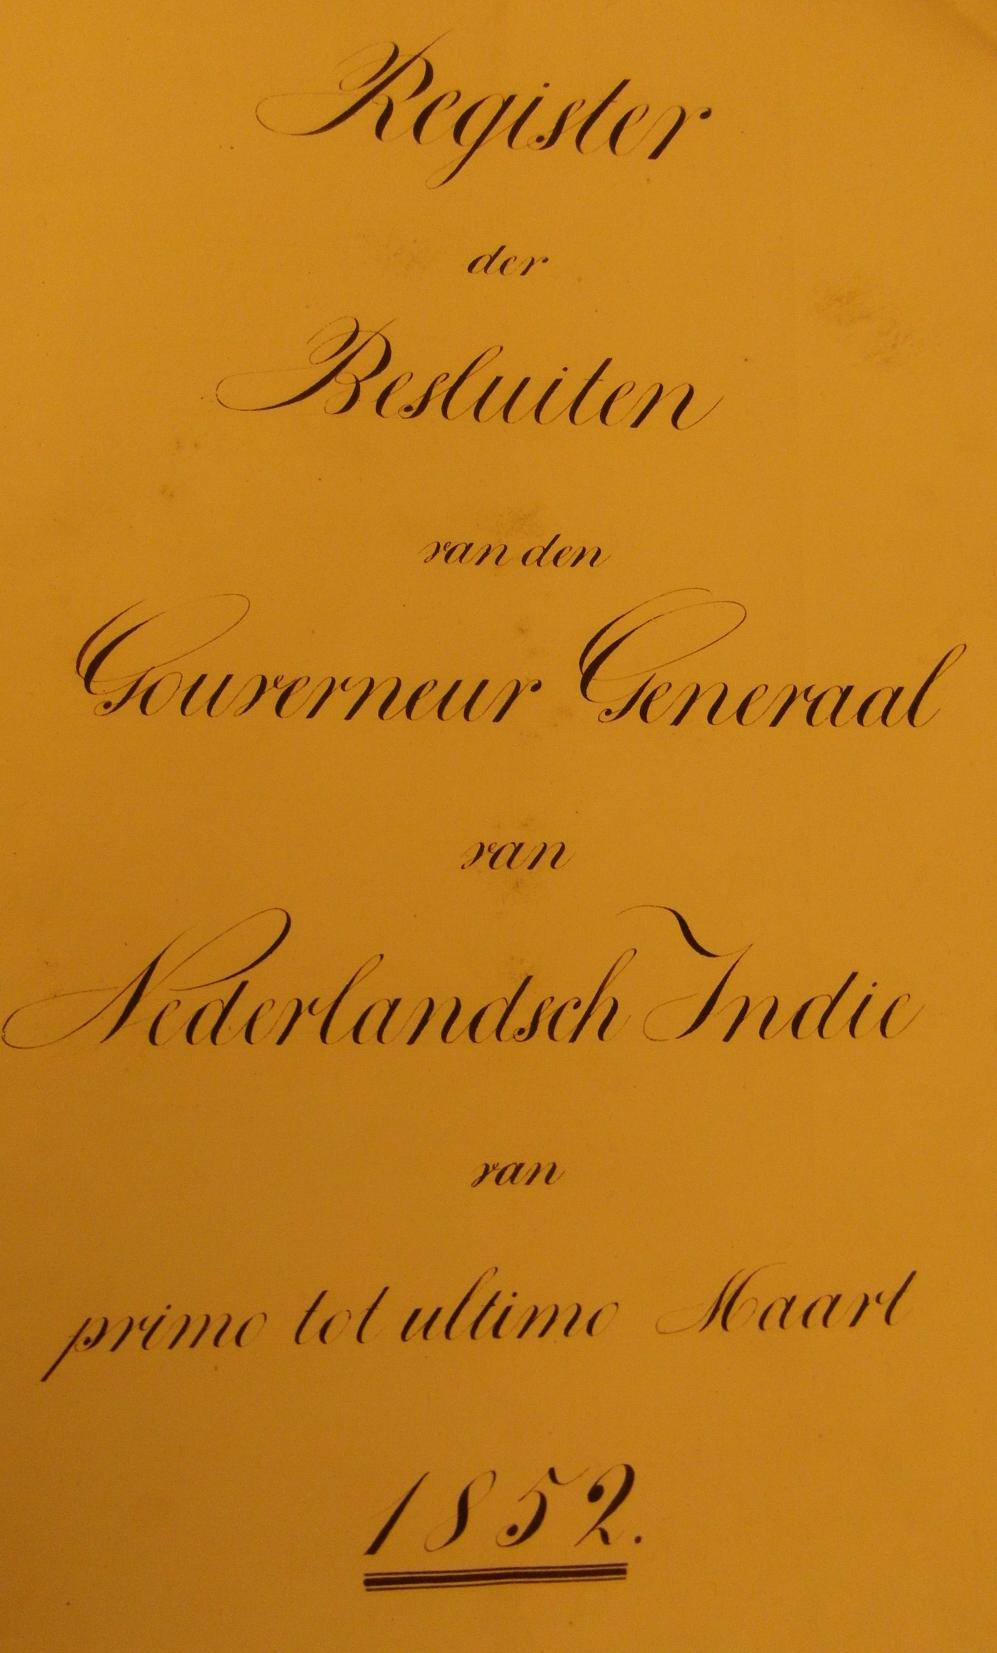 4. In 1852 gepensioneerd bij besluit GG (Gouverneur-Generaal) nr. 3 dd. 7-3-1852 (pens. f 1200,-), gep.